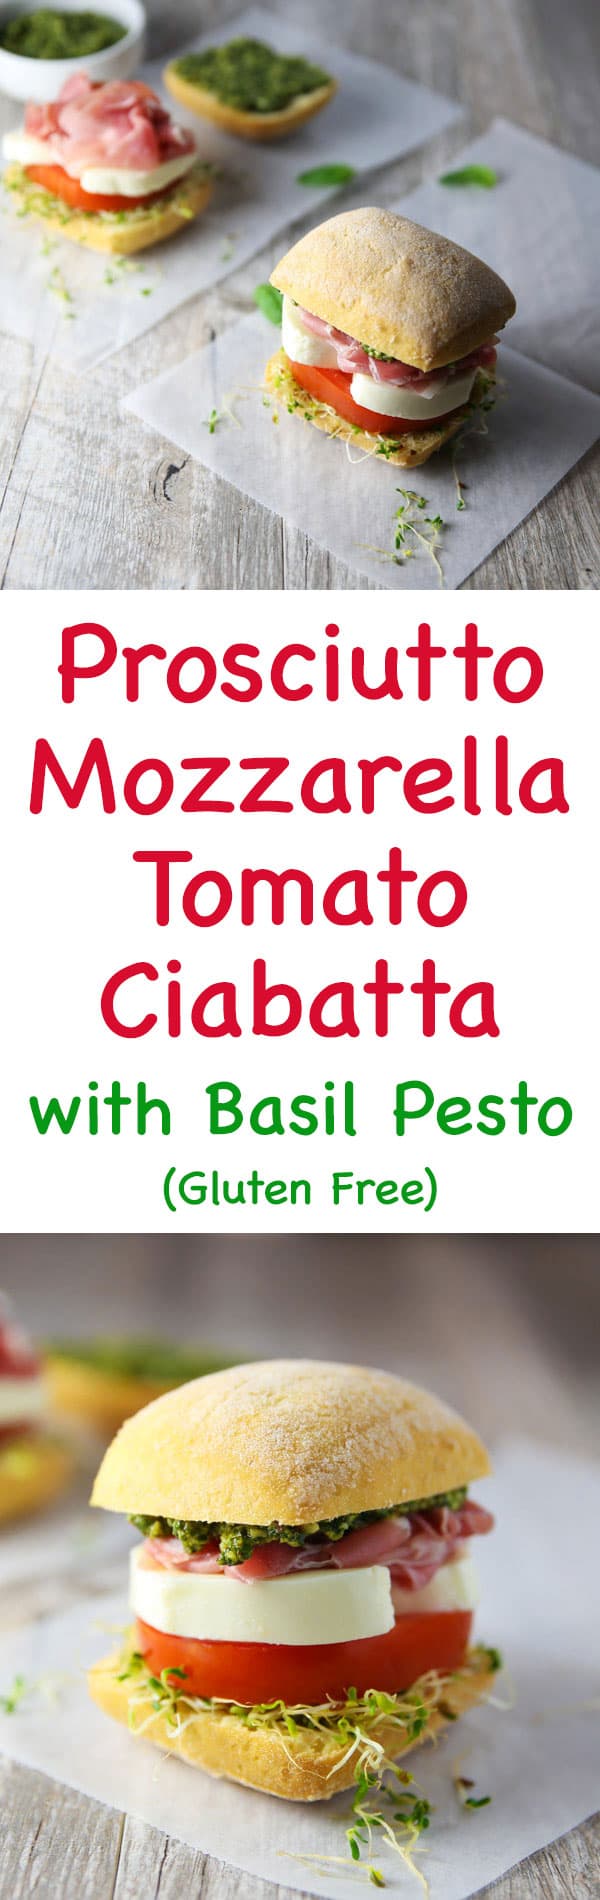 These Prosciutto Mozzarella Tomato Ciabatta with Basil Pesto Rolls are so flavorful! (Gluten Free)